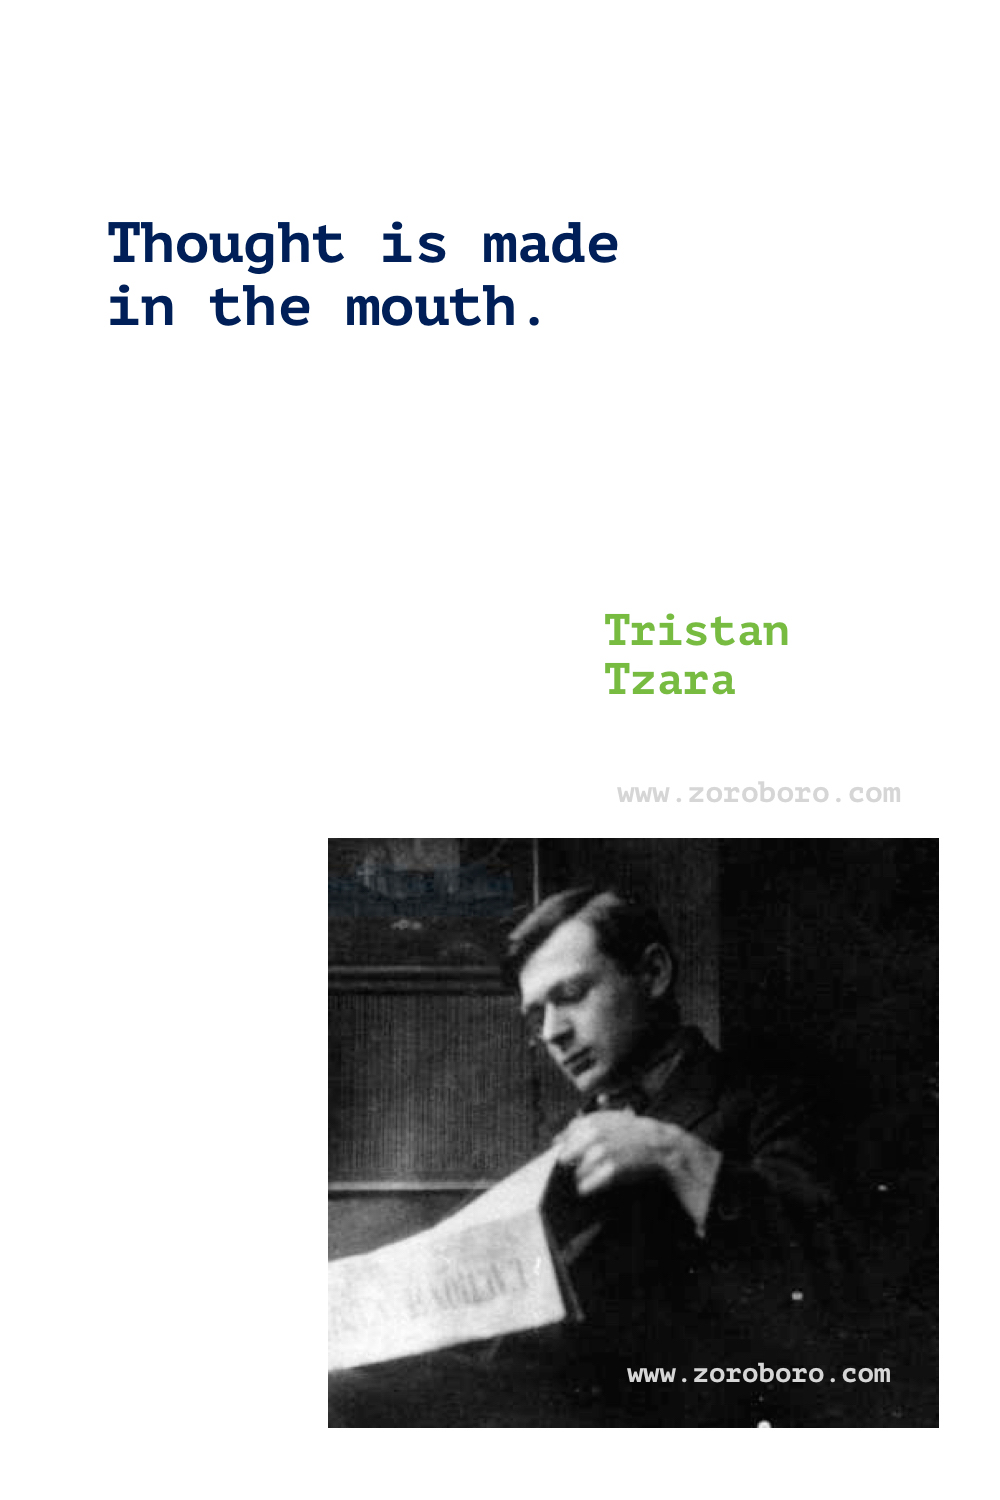 Tristan Tzara Quotes. Tristan Tzara Poems. Tristan Tzara Dada Art. Tristan Tzara Books Poems. Tristan Tzara Quotes. Seven Dada Manifestos and Lampisteries.